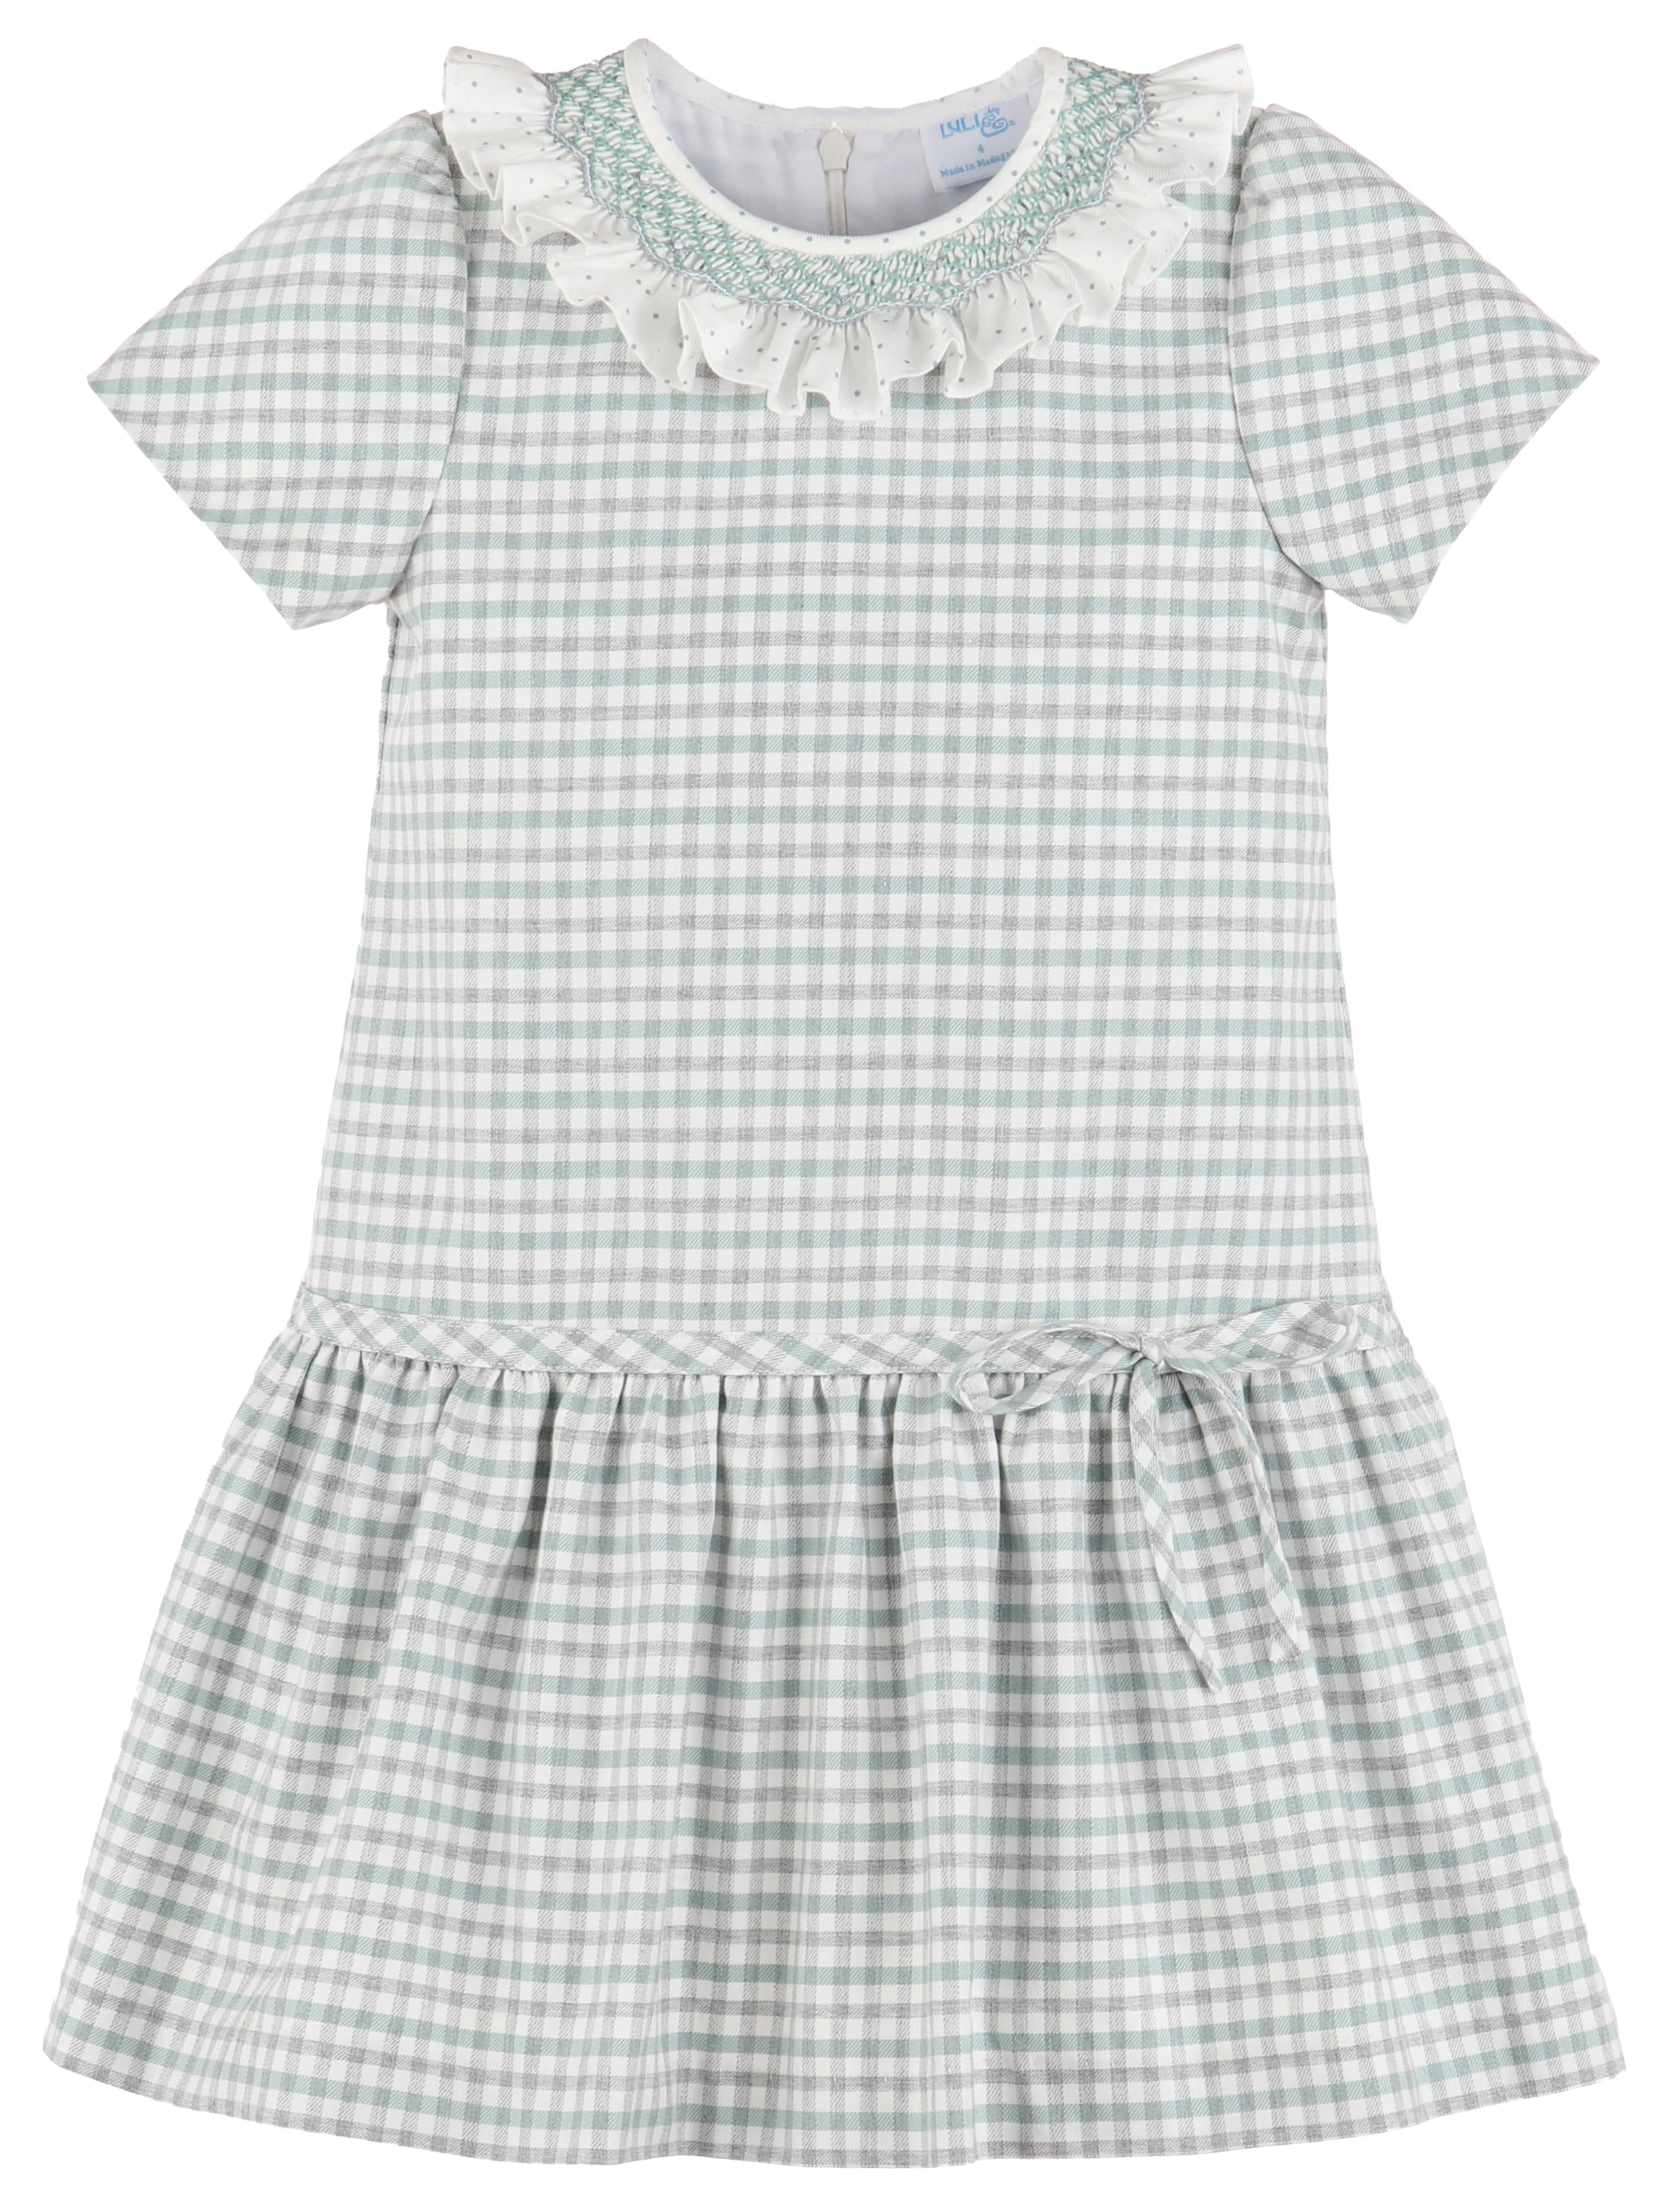 C&A - Casero & Associates Casero & Associates Smock Ruffle Dress - Little Miss Muffin Children & Home